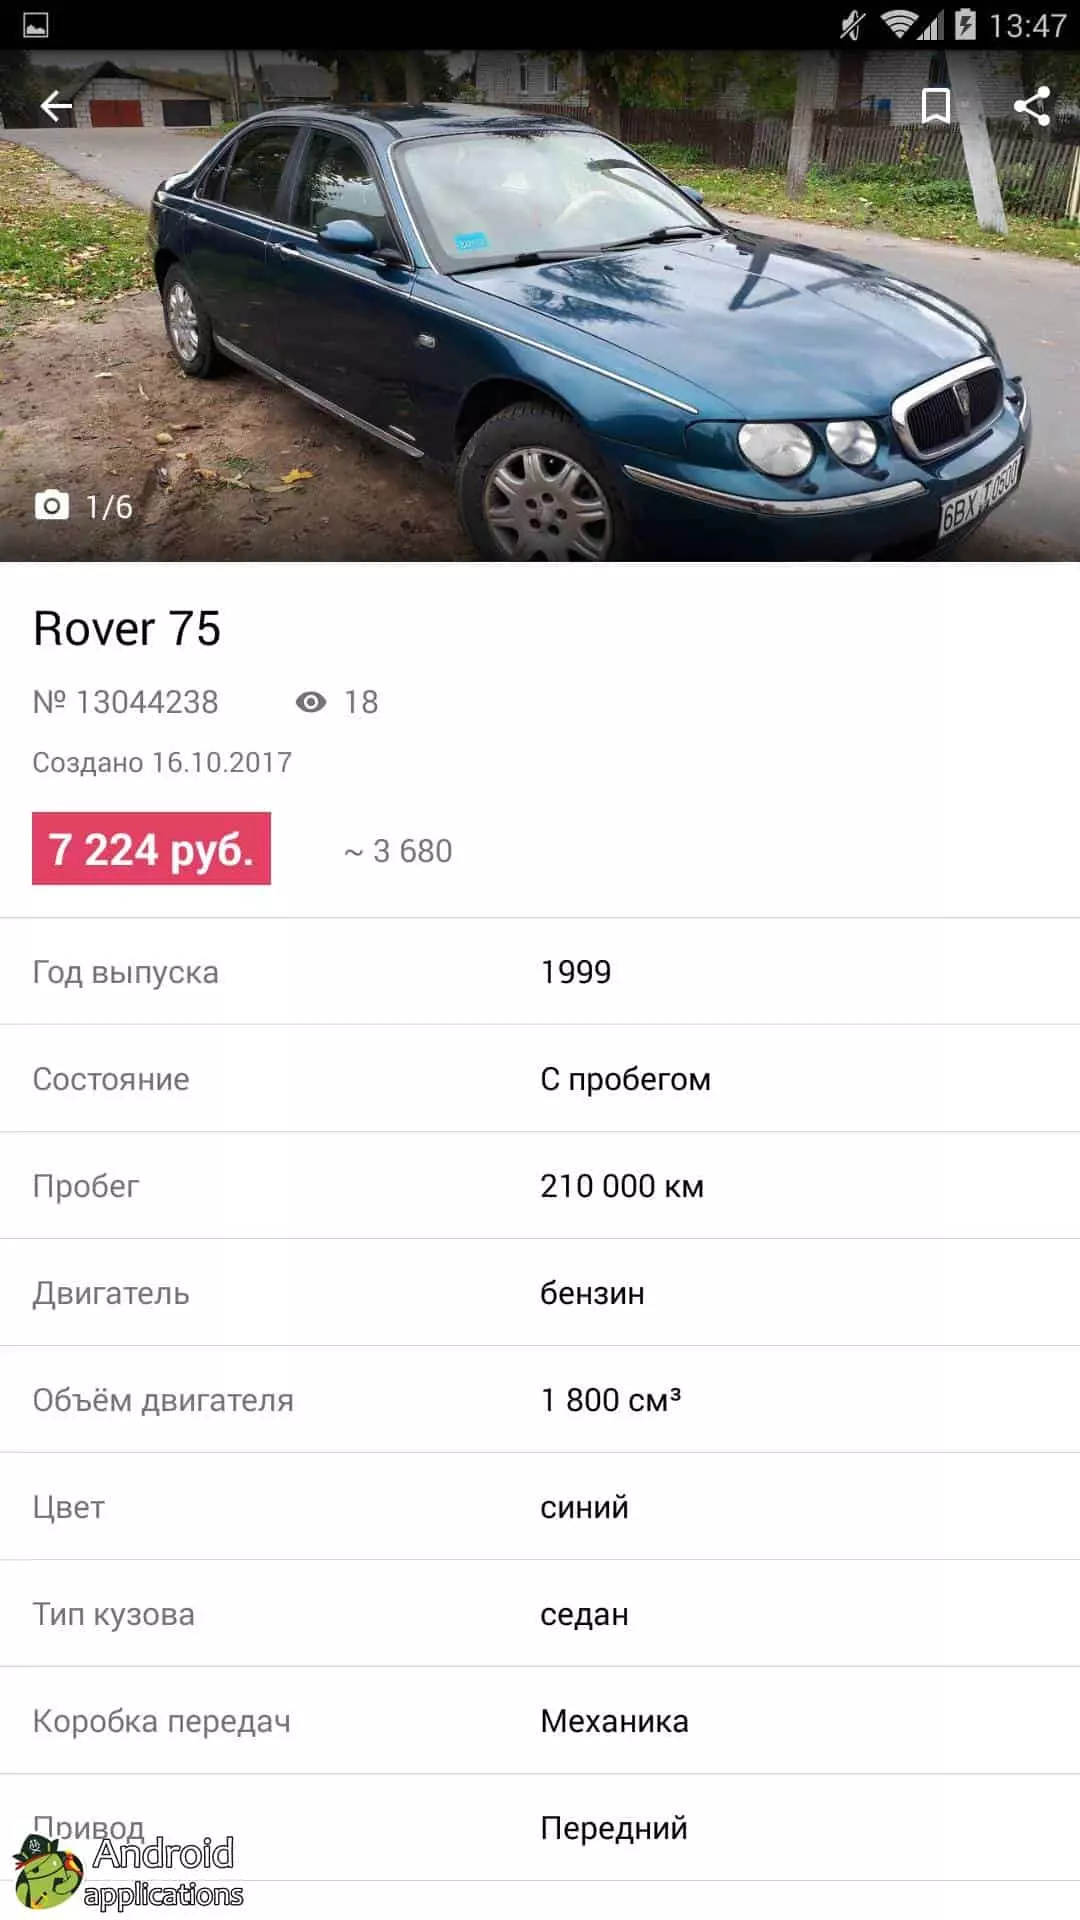 Продажа авто в беларуси бу с фото